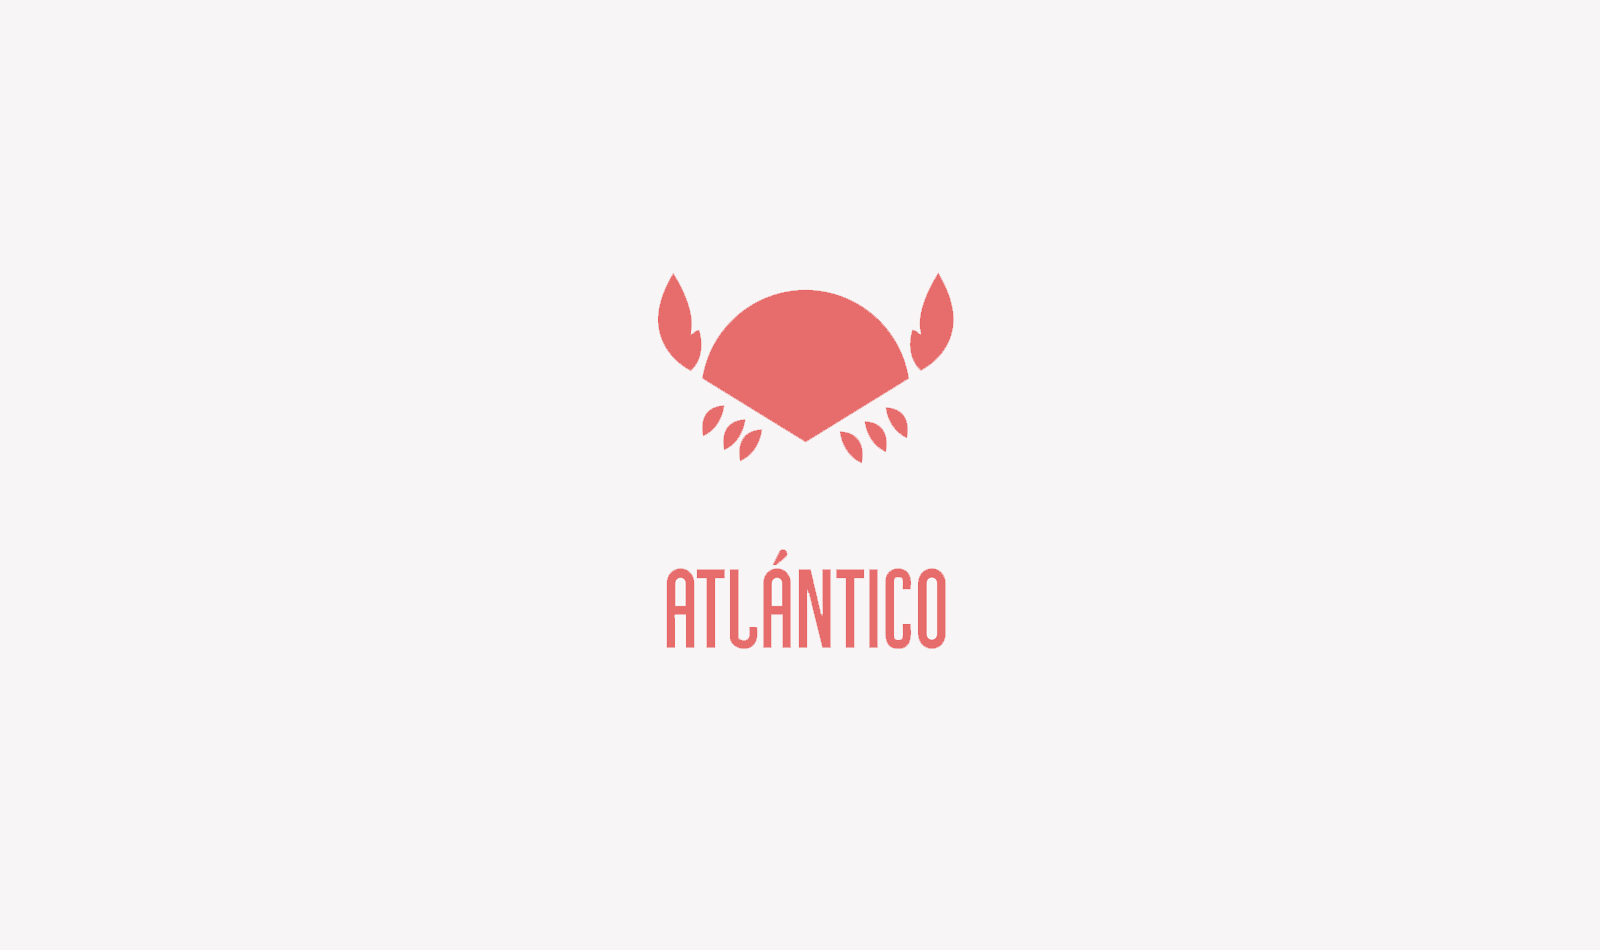 antia-carbajo-atlantico-1